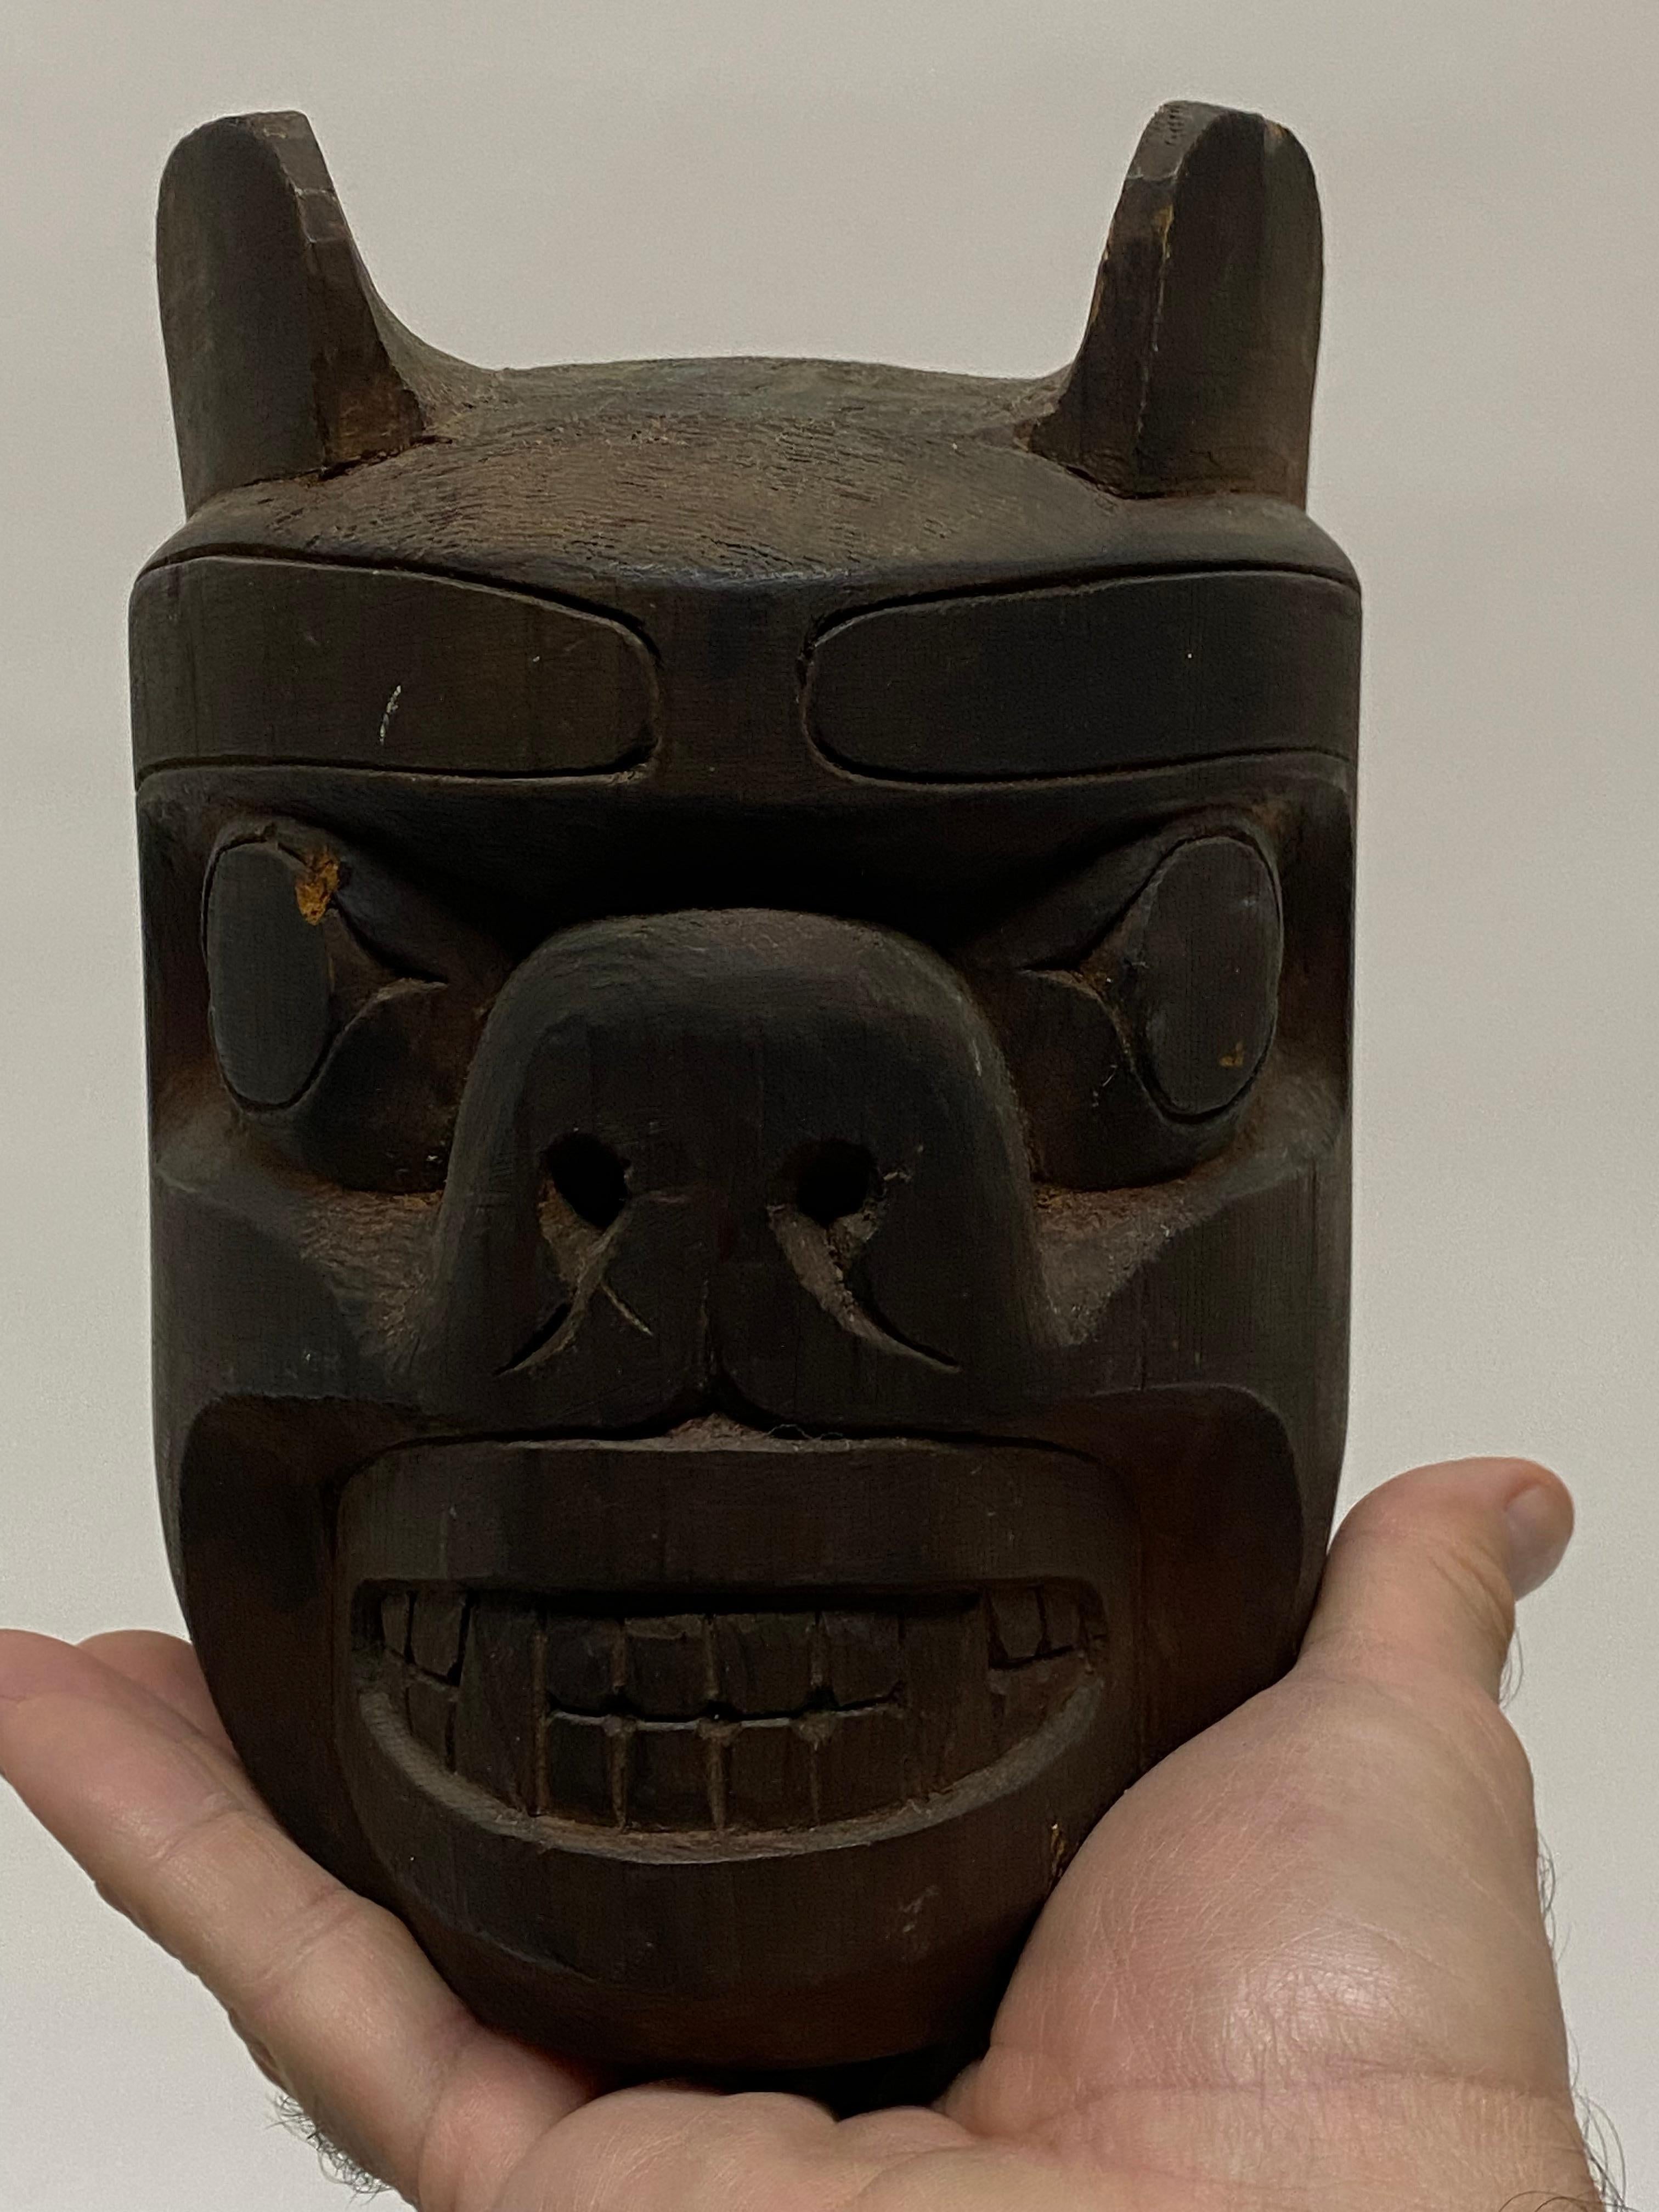 Authentische, aus Holz geschnitzte Maske der First Nations von Meisterschnitzer Henry Hunt (1923-1985). Dieses handgeschnitzte Schmuckstück stellt einen kanadischen Grizzlybären dar. Rückseitig mit Bleistift kursiv signiert: Henry Hunt. Geschnitzt